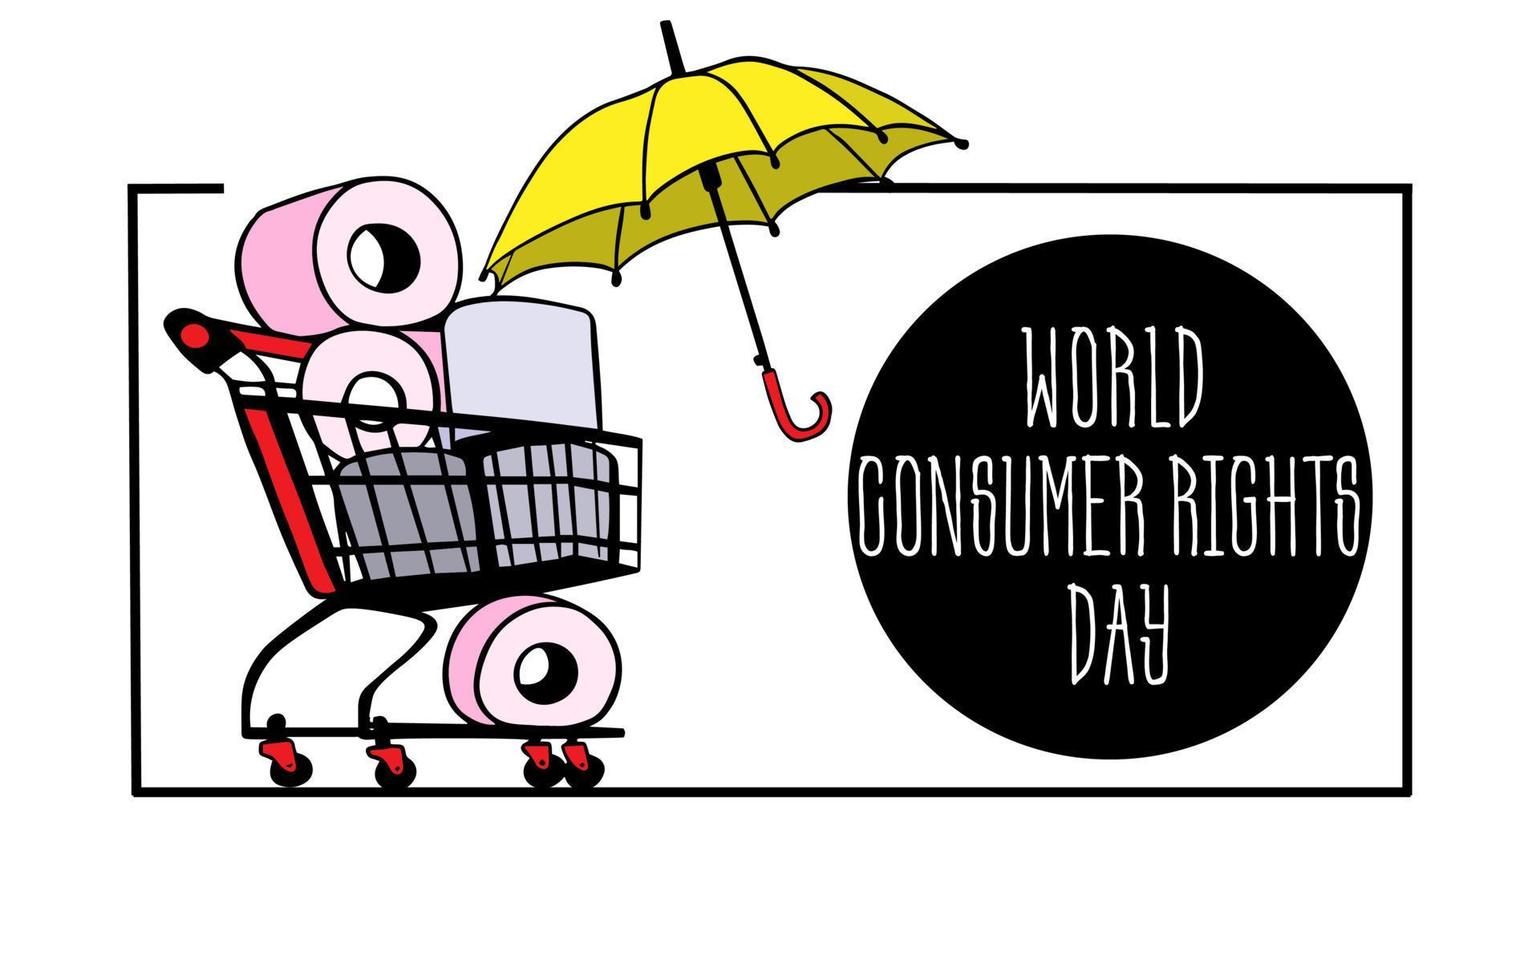 dia mundial de defesa do consumidor. carrinho sobre rodas, cesto de compras com rolos de papel higiênico recheados e amarelo. sacolas de compras e necessidades do consumidor. comprar online. vetor